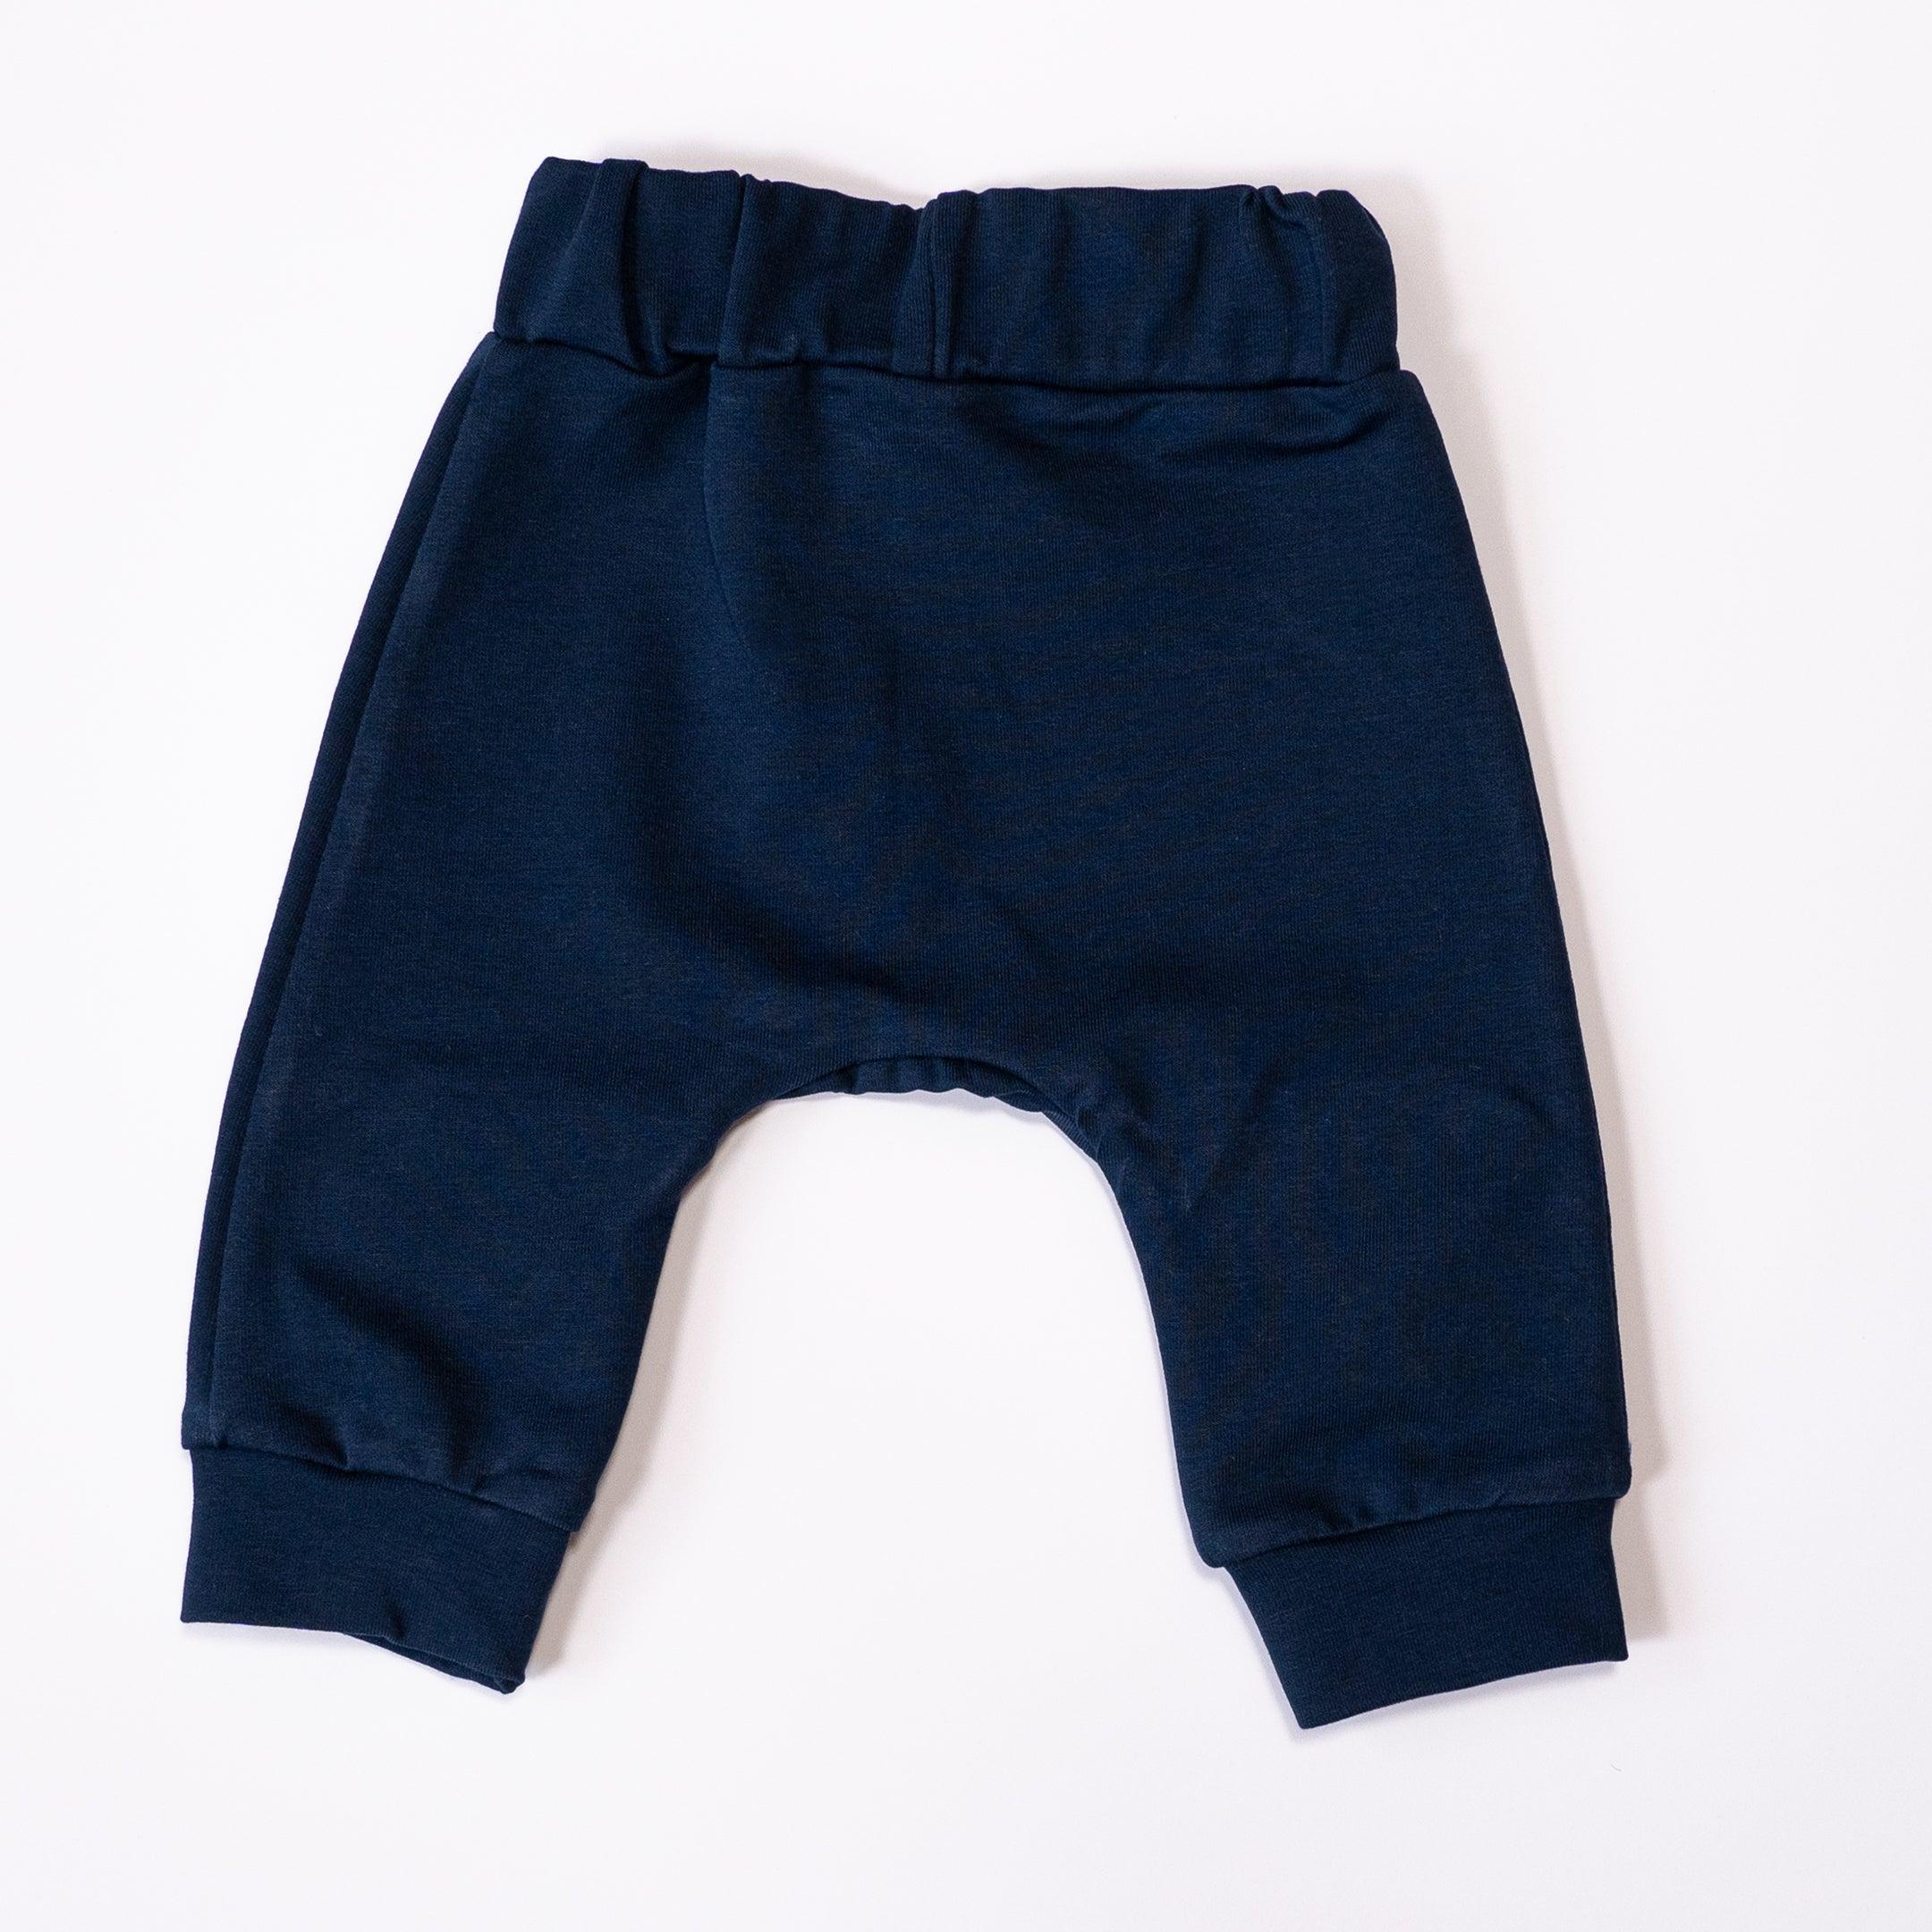 Kidealo: Teddy Bear sweatpants navy blue